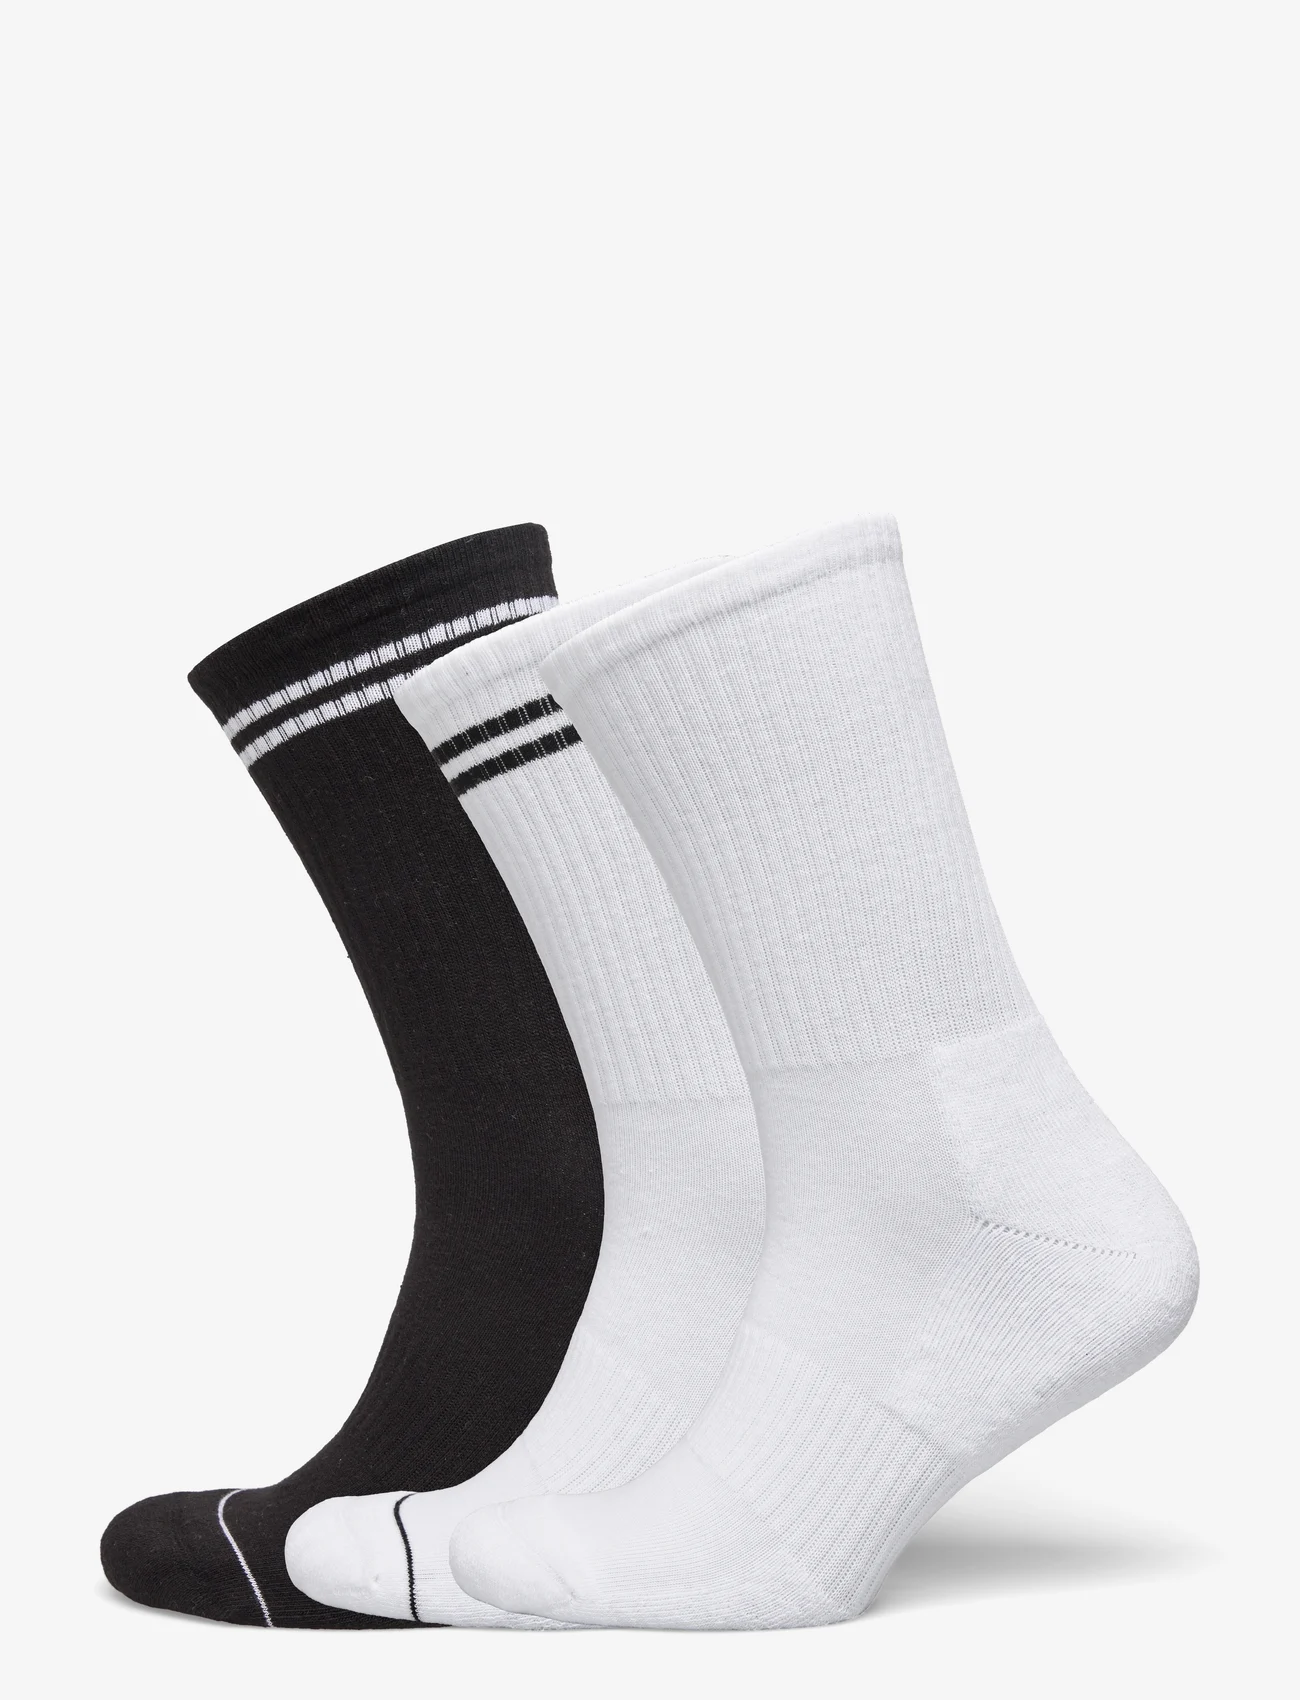 Lindex - Sock 3 p sport rib terry sole - mažiausios kainos - white - 0